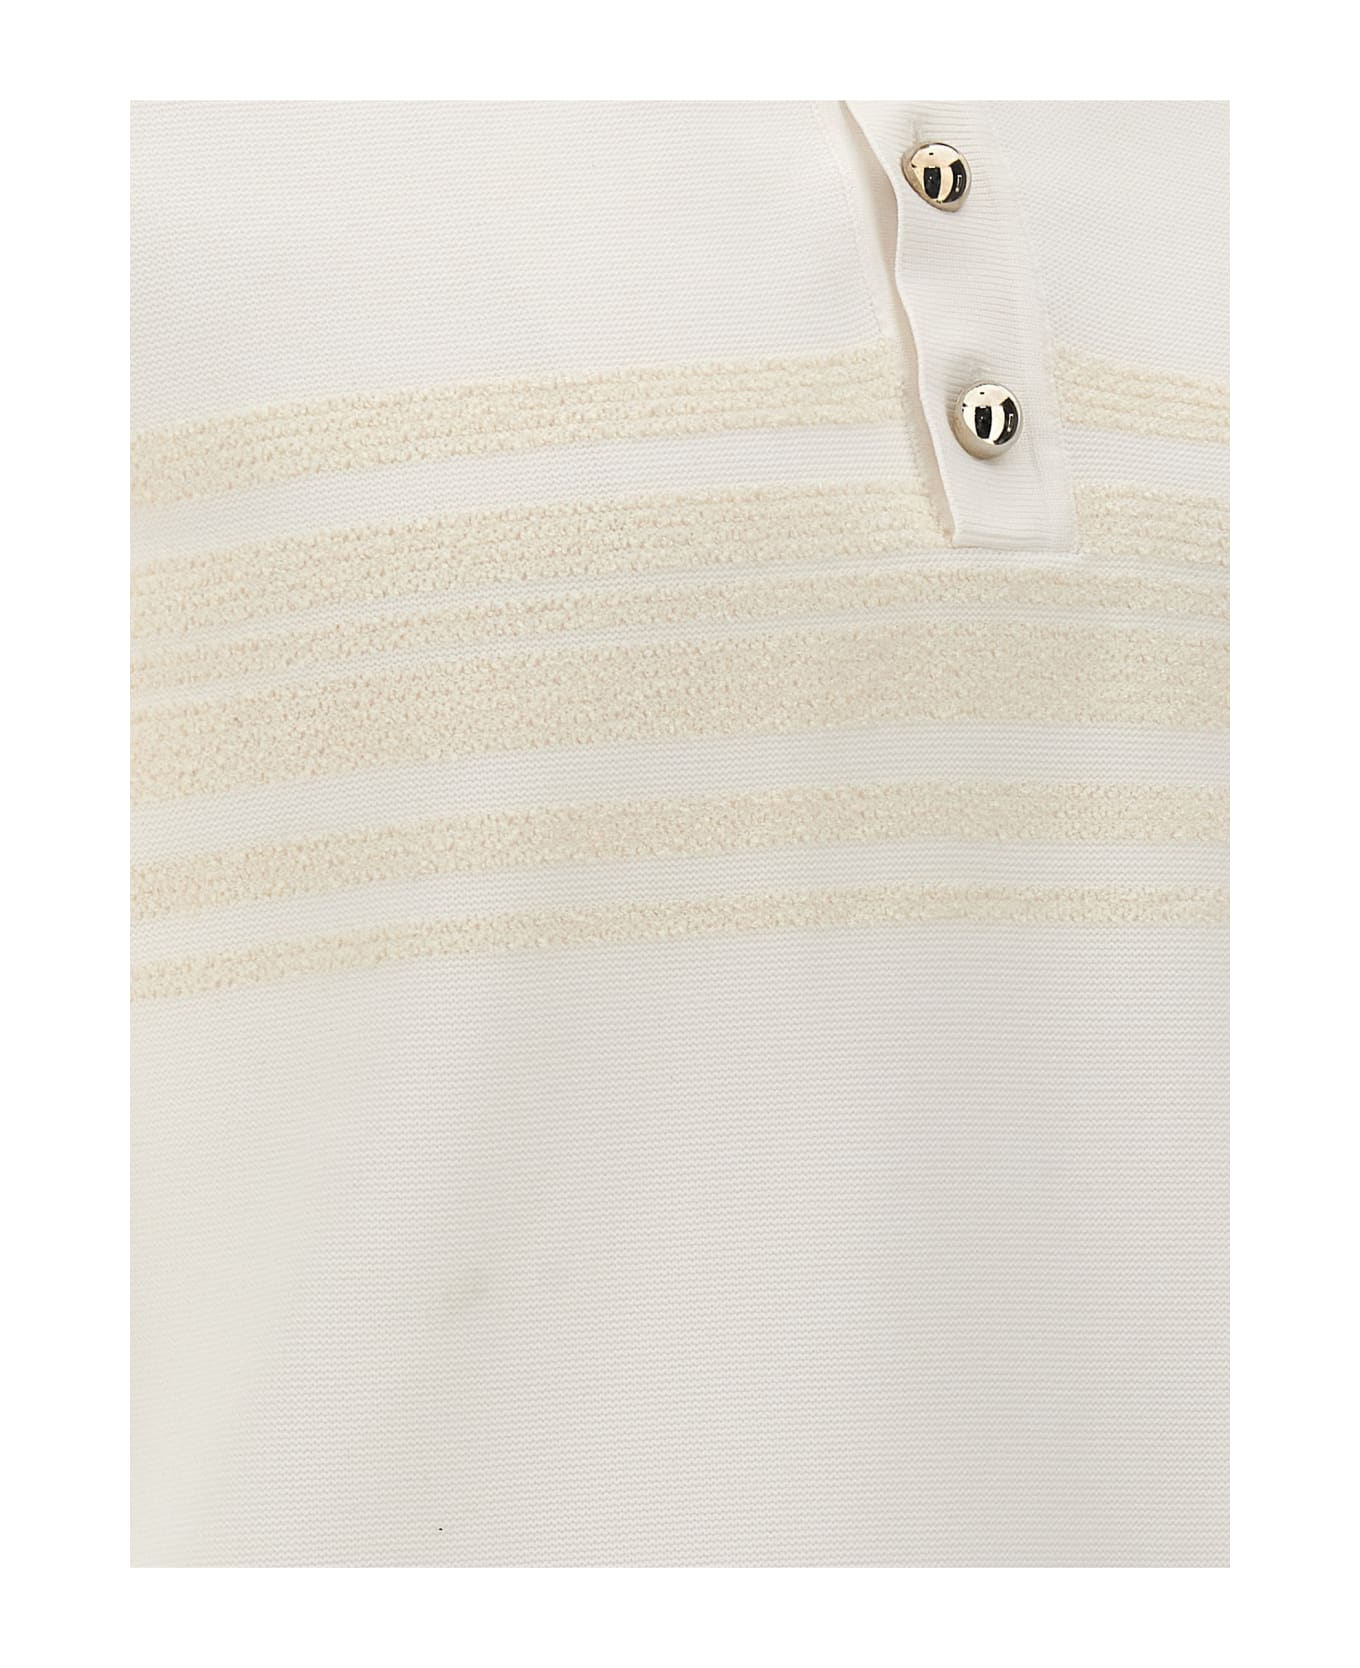 Wales Bonner 'dawn' Polo Shirt - White ポロシャツ